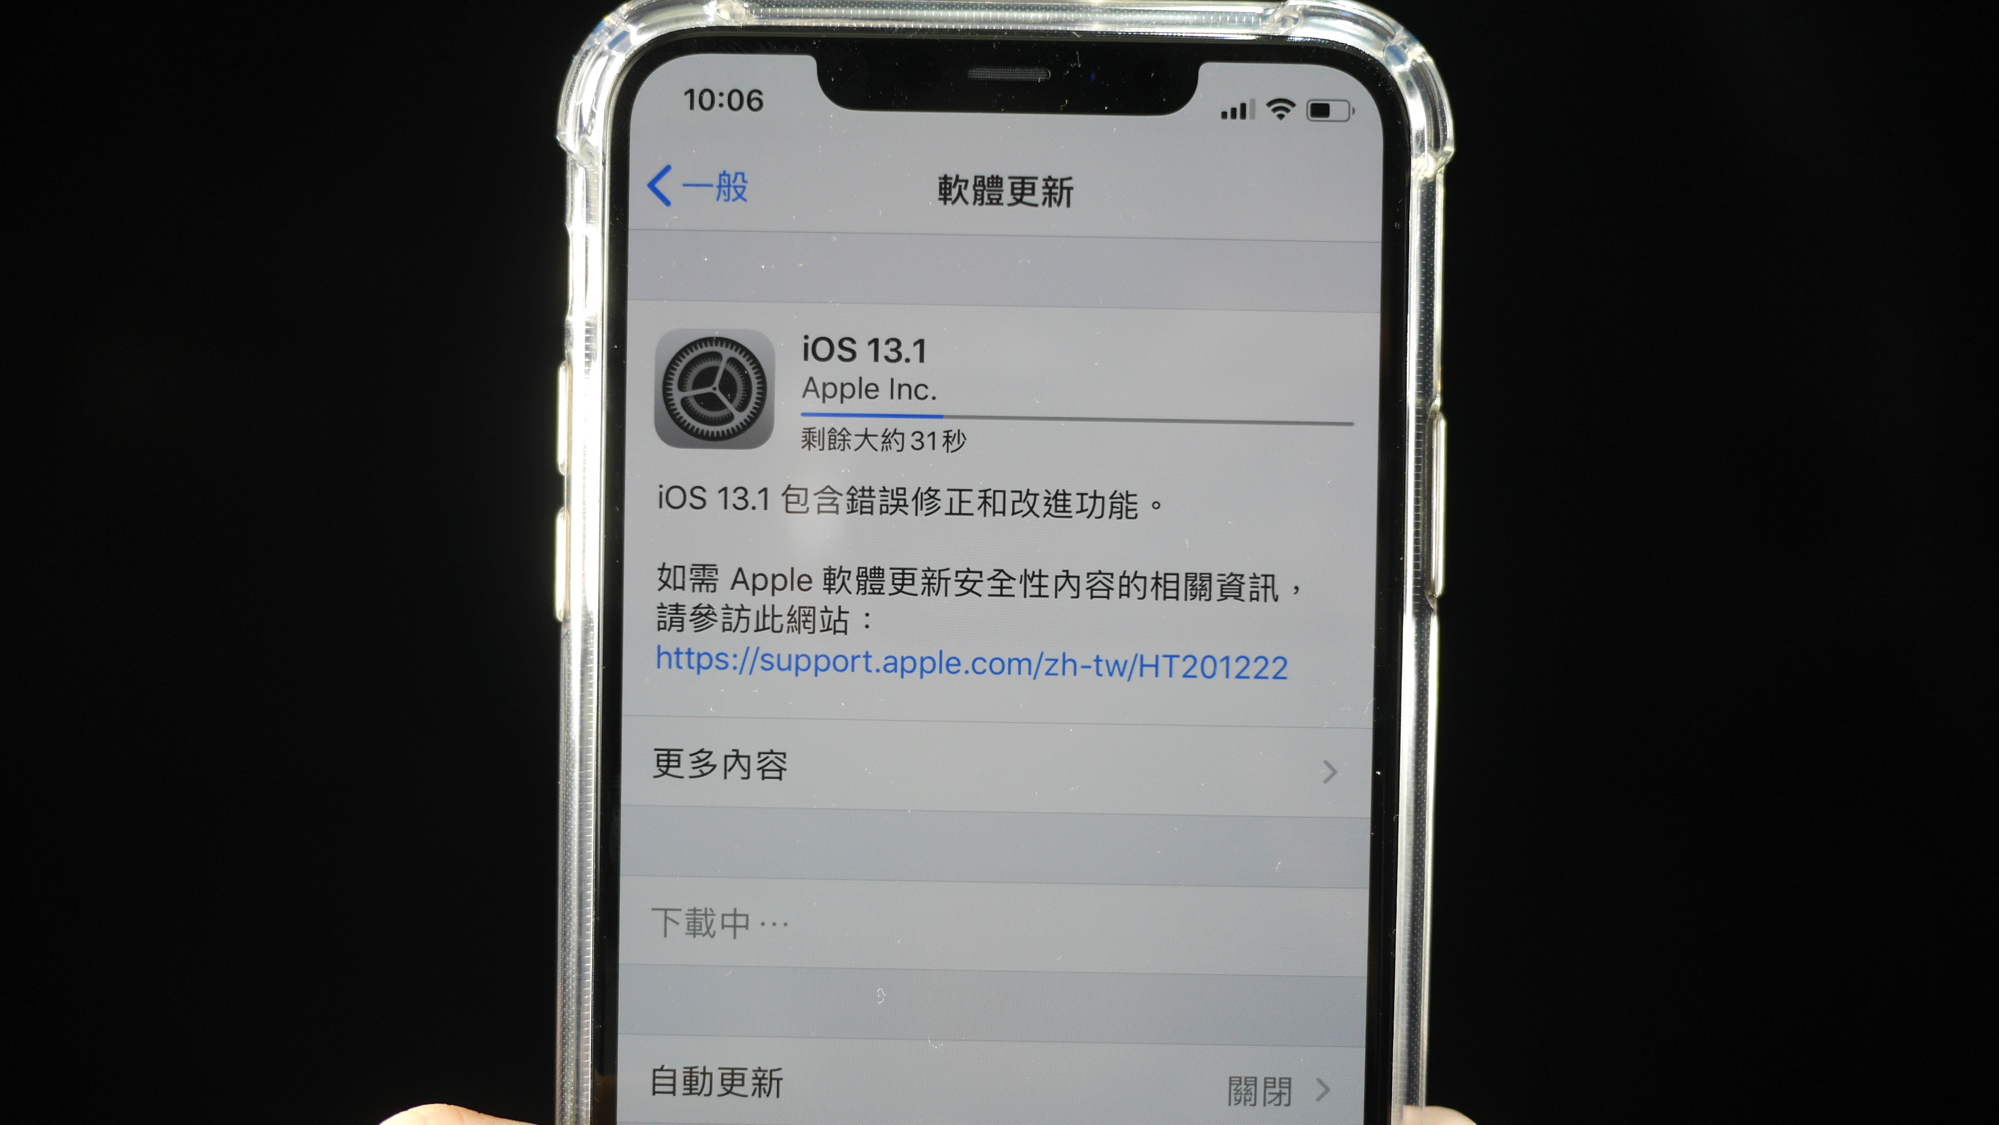 【快訊報報】iOS 13.1 可以更新囉～趕快讓 iPhone 脫離災情滿滿的 iOS 13 吧！ - iPhone - 科技狗 3C DOG